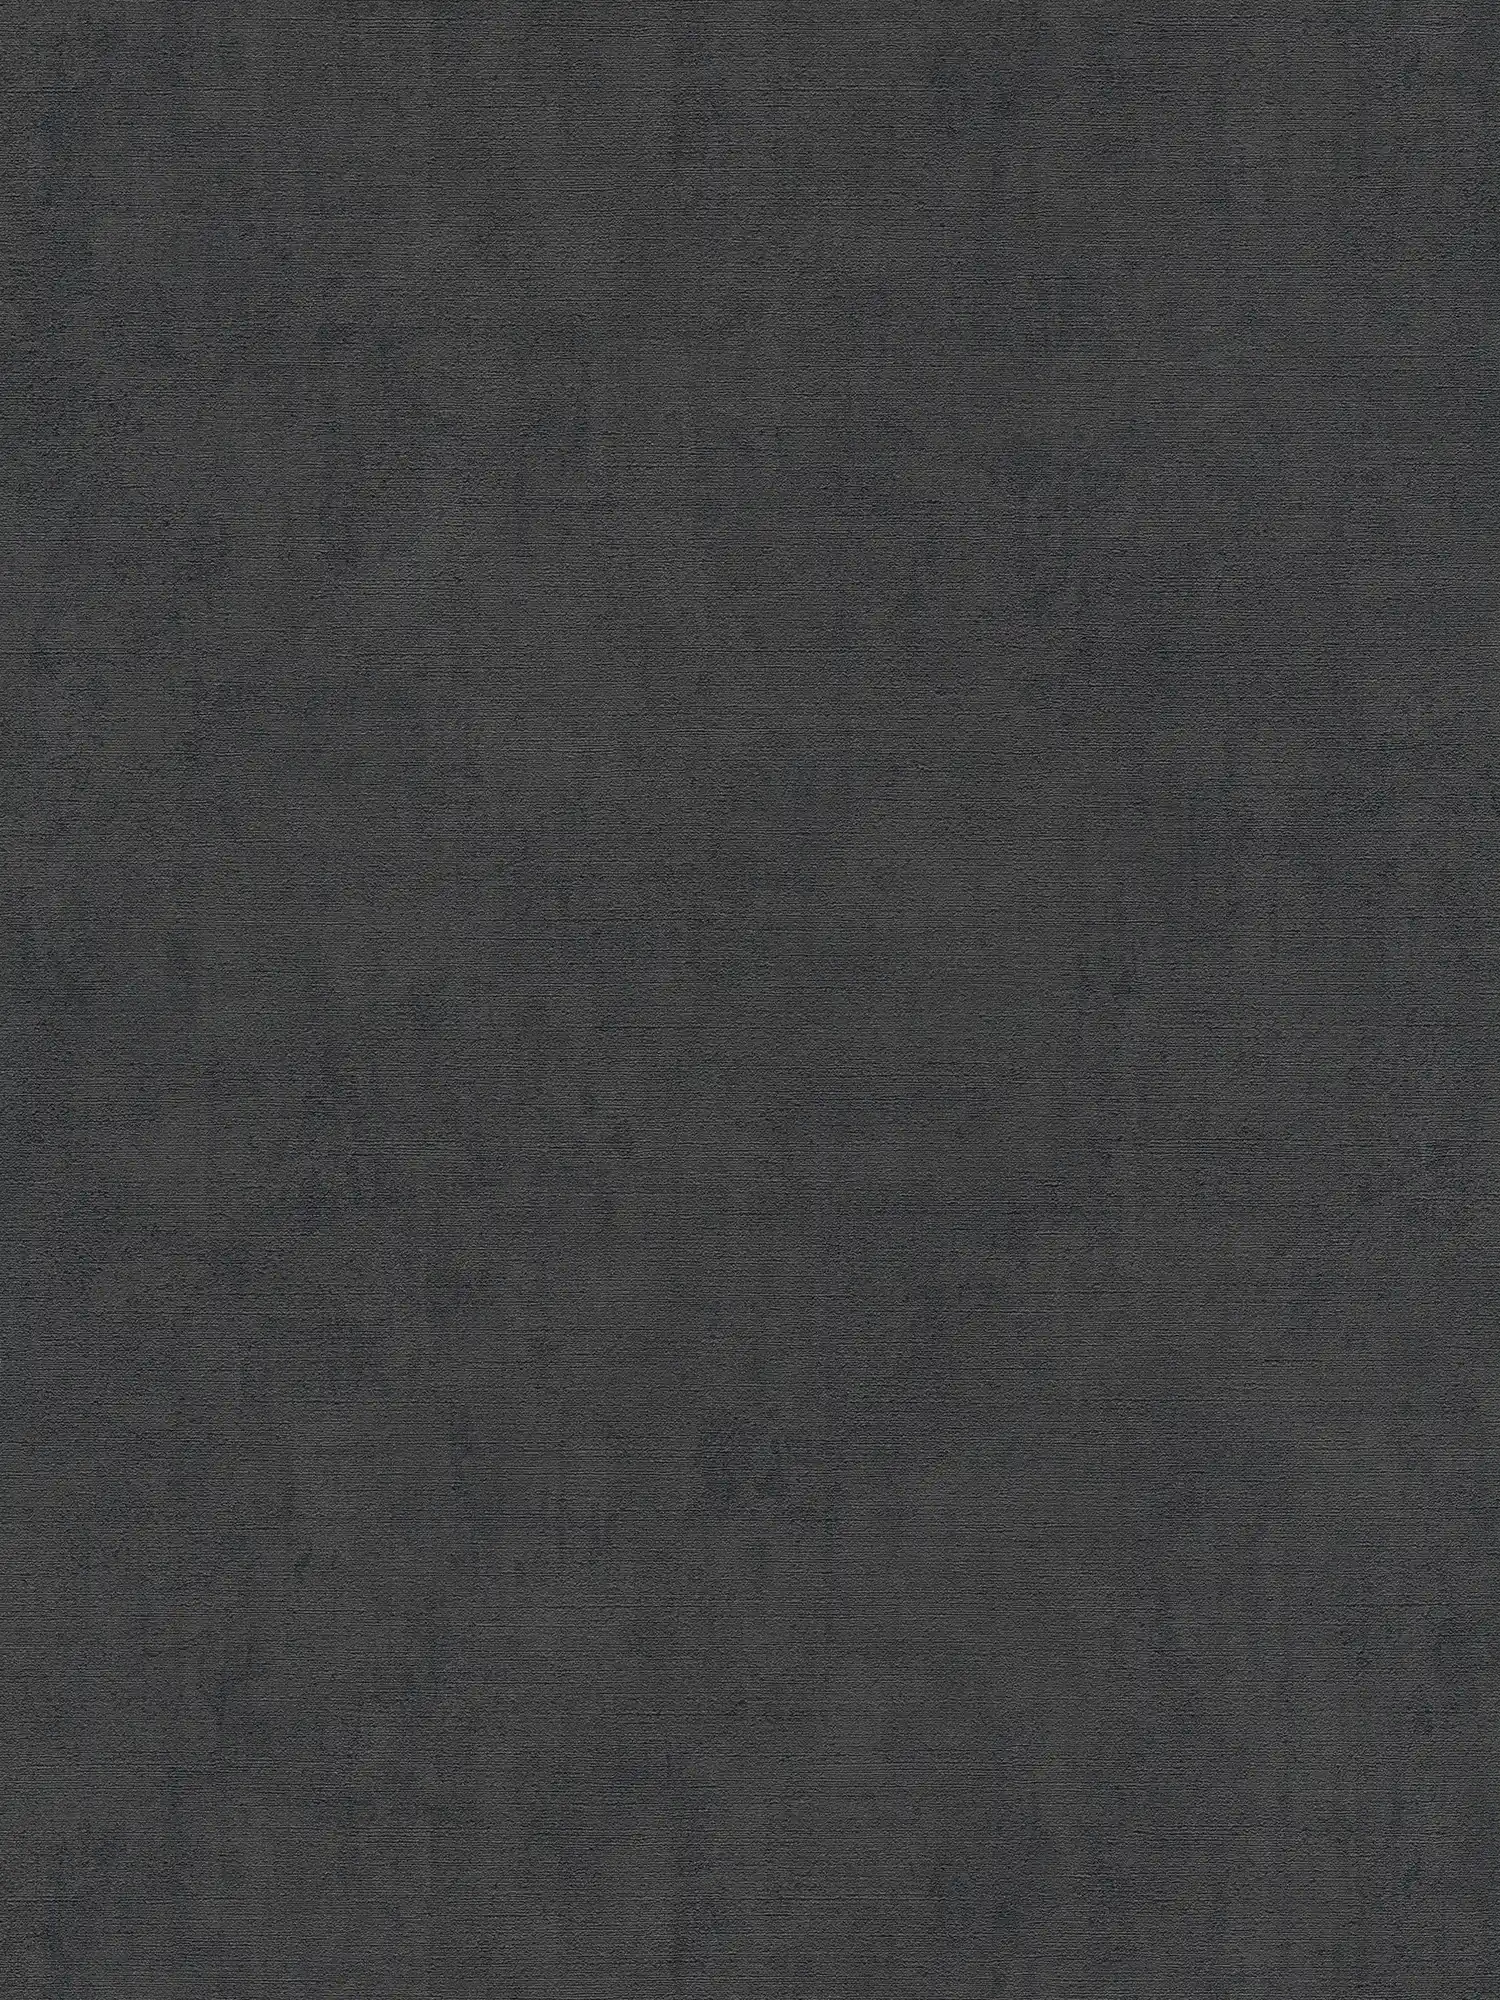 Carta da parati nera tinta unita screziata con struttura in rilievo
